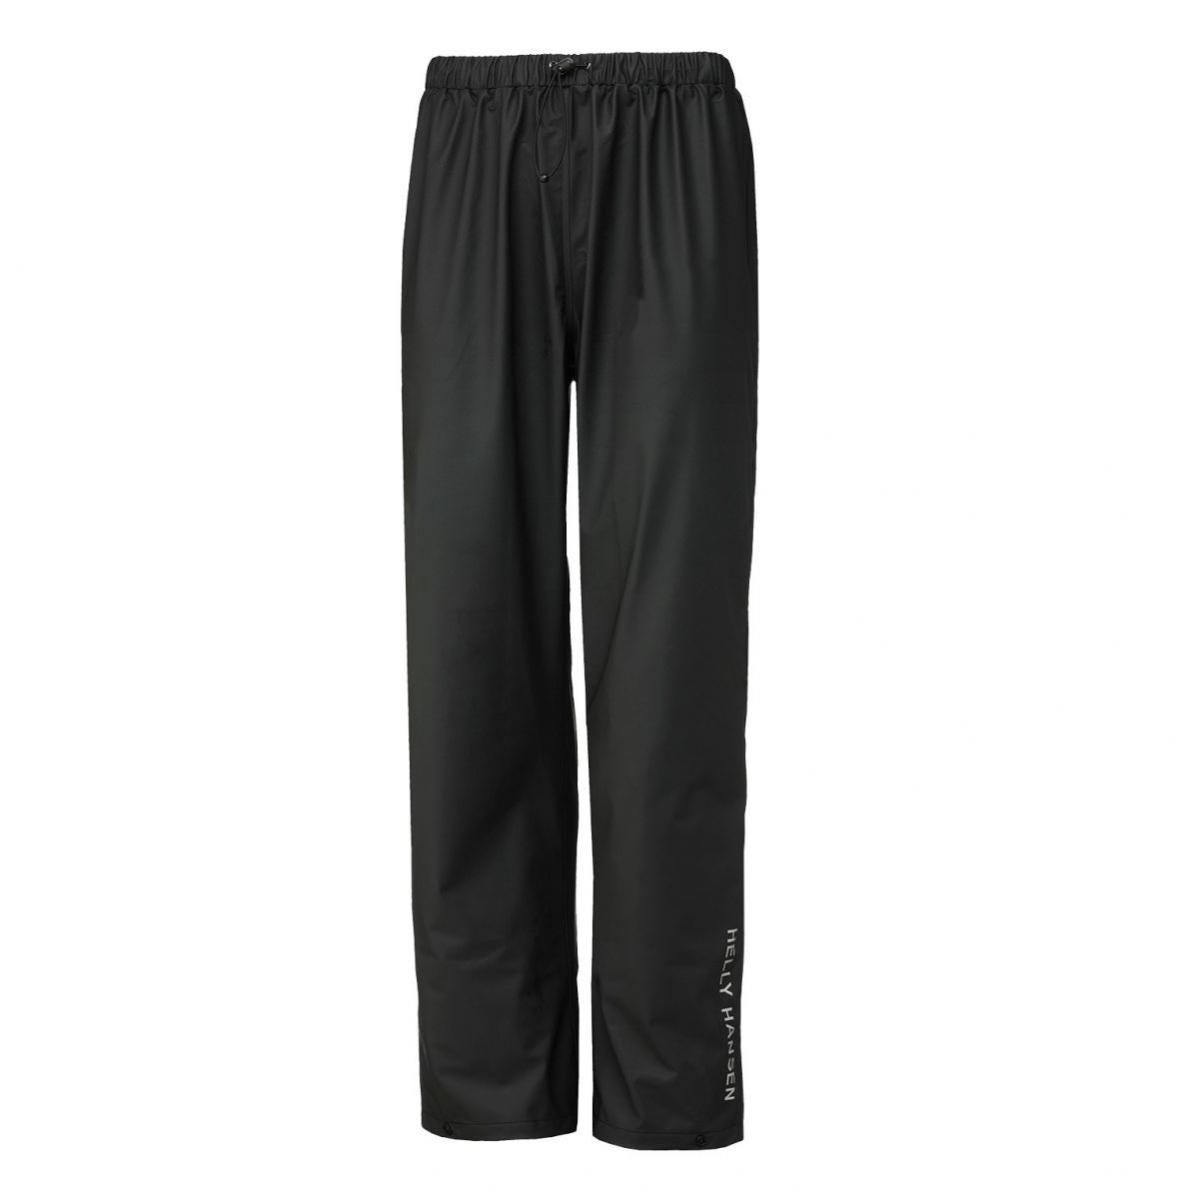 Pantalon de pluie imperméable Voss noir - Helly Hansen - Taille 4XL 0